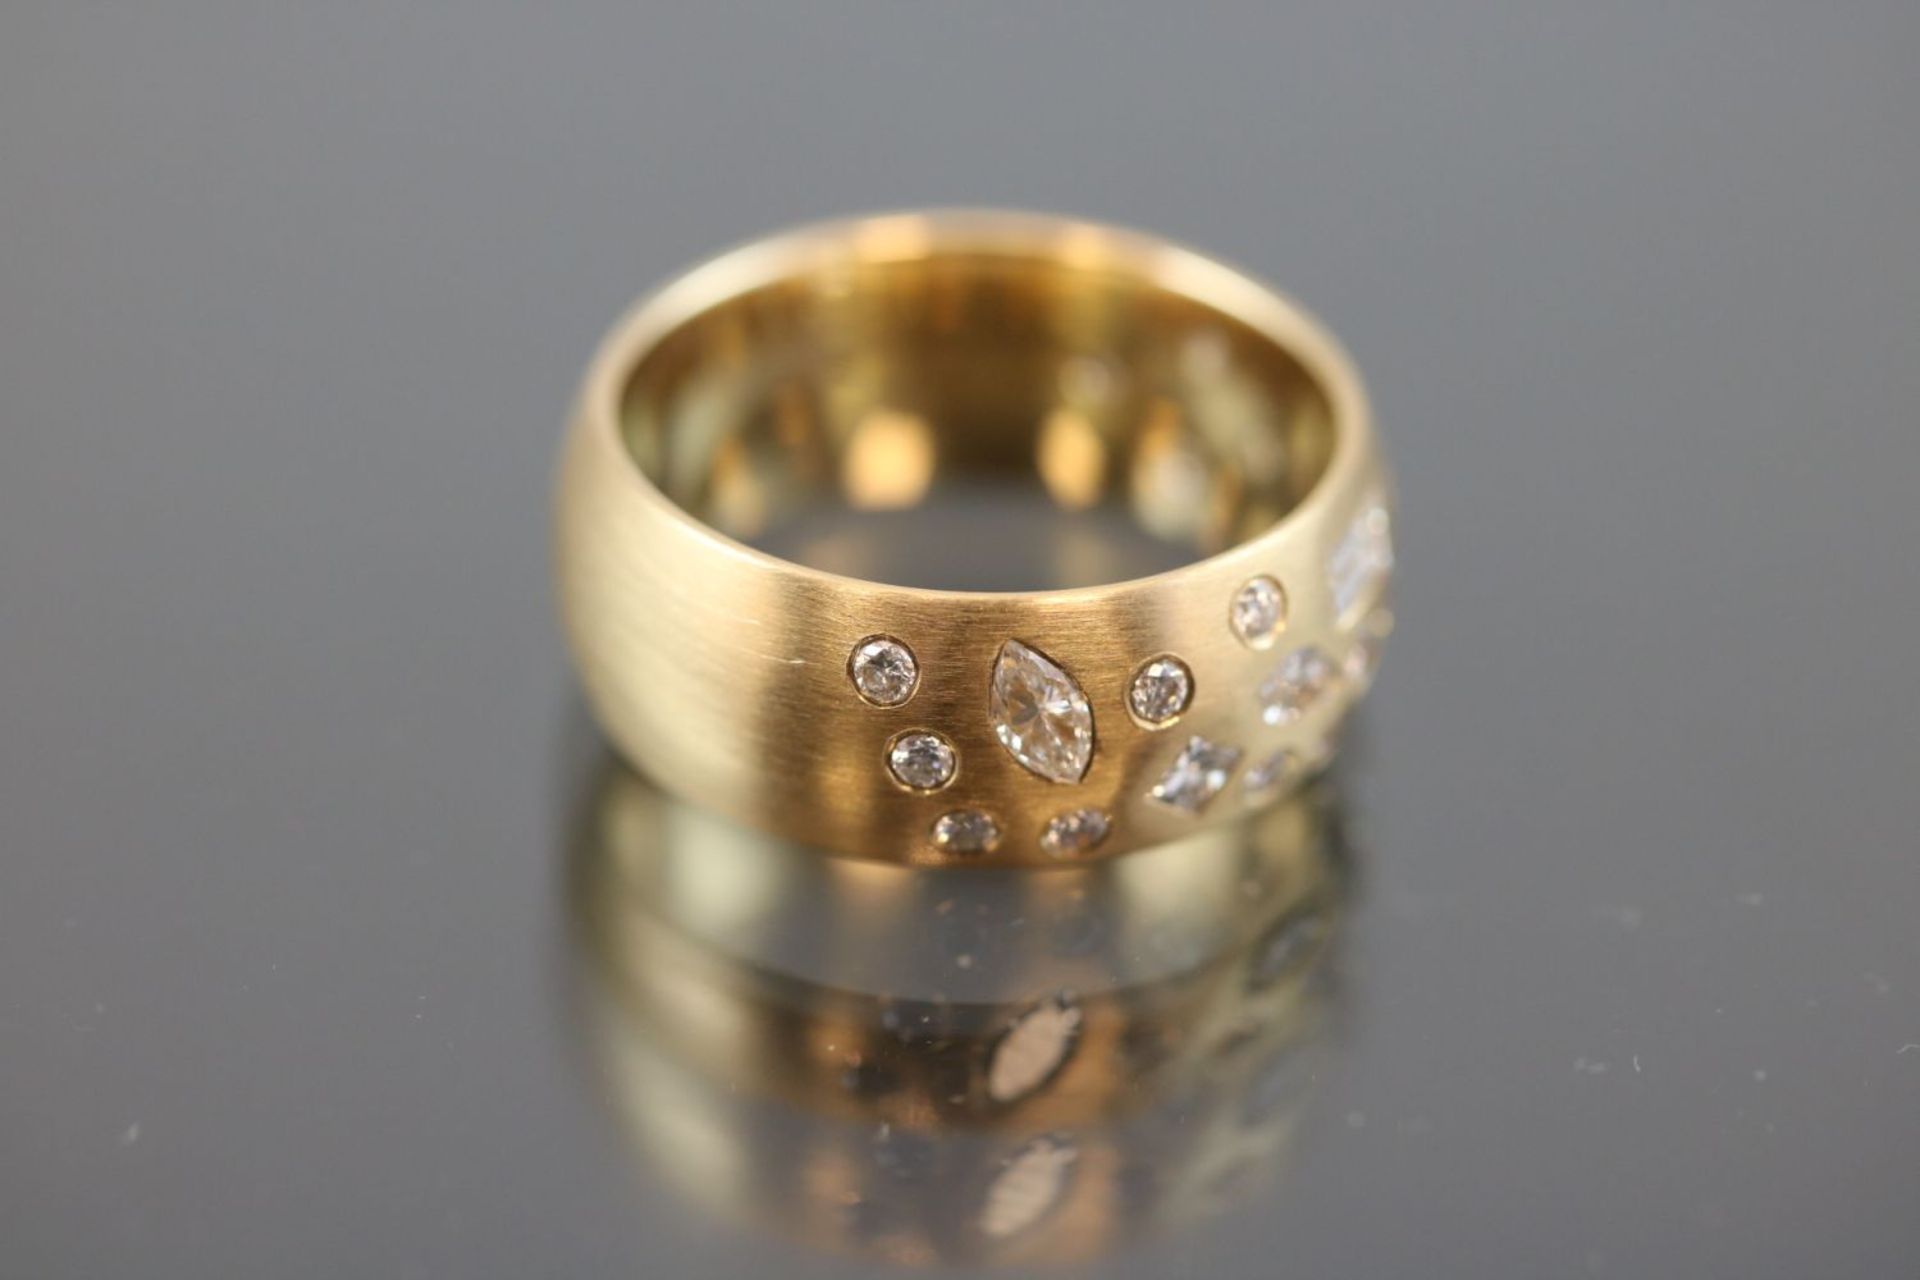 Design-Brillant-Ring, 750 Gelbgold10 Gramm 32 Brillanten / Diamanten, 2,37 ct., w/si. Ringgröße: - Bild 3 aus 3